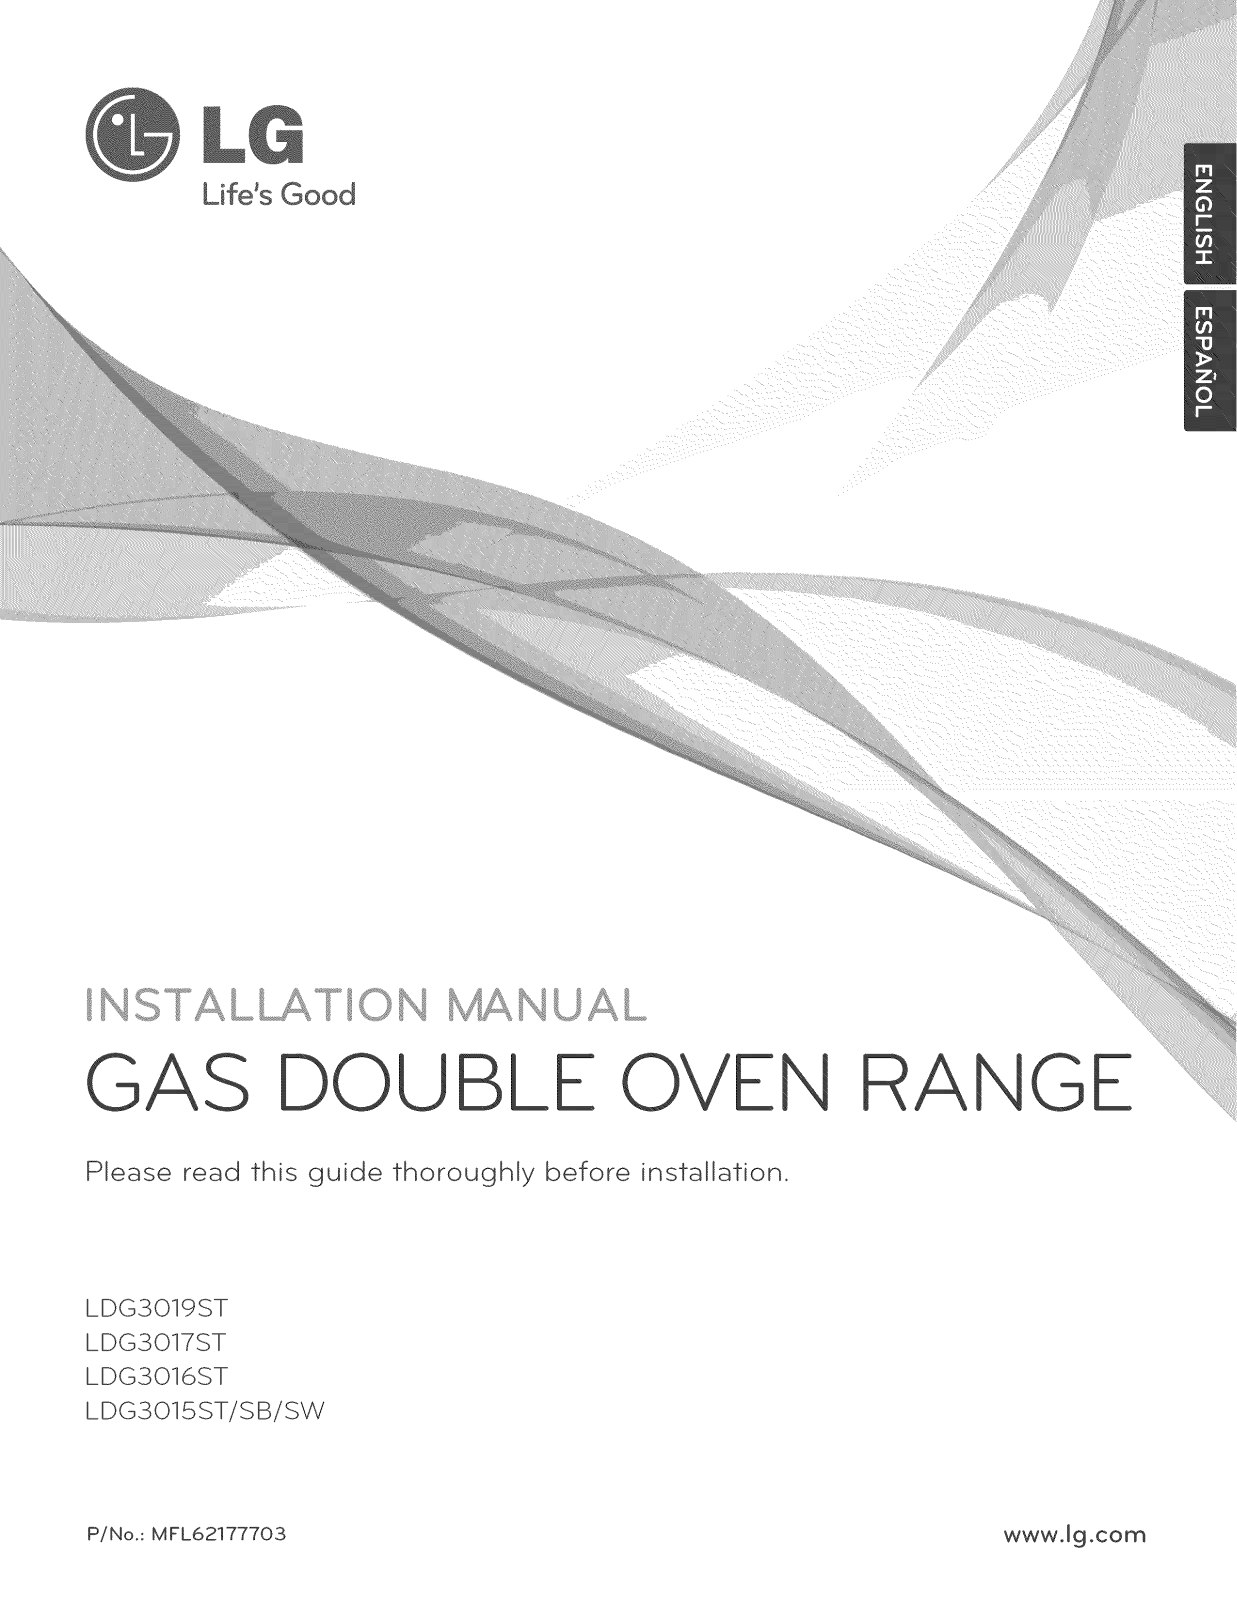 LG LDG3017ST/00, LDG3016ST/00, LDG3015ST/00, LDG3015SW Installation Guide